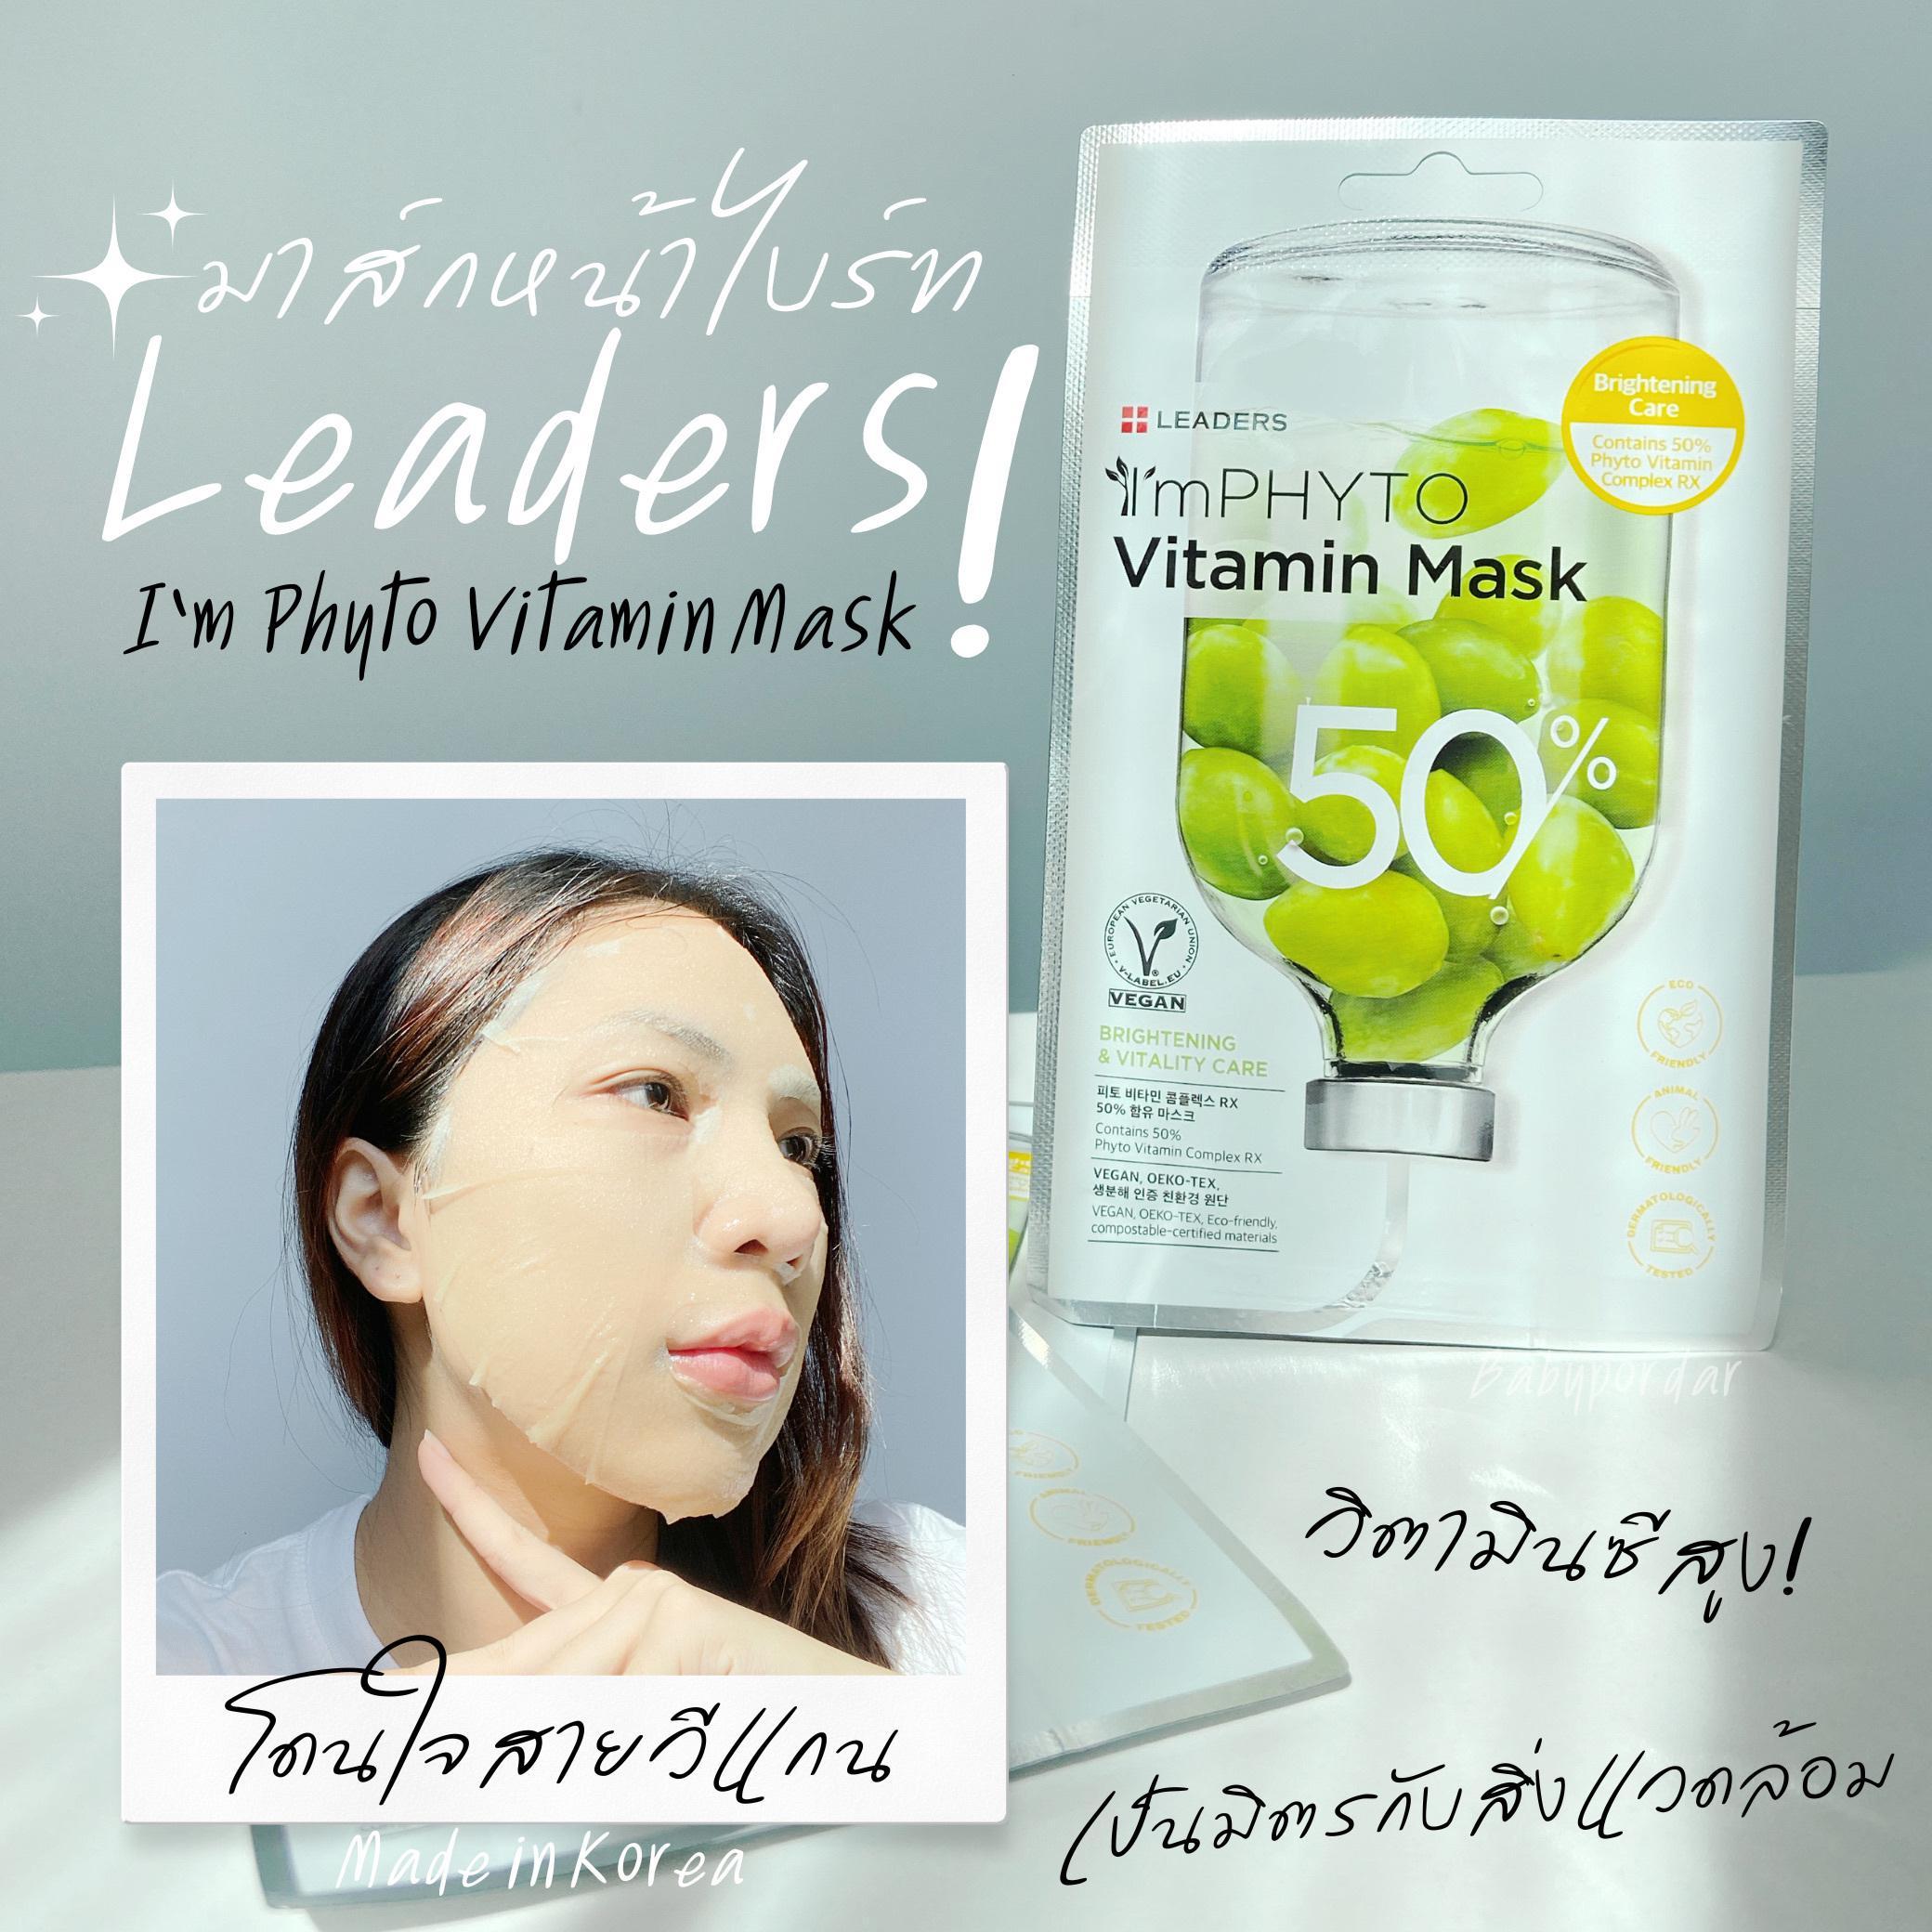 ภาพหน้าปก รีวิวมาส์กหน้าไบร์ทด้วยพลังวิตซี - Leaders I'm Phyto Vitamin Mask ย่อยสลายได้เป็นมิตรกับสิ่งแวดล้อม! ที่:0